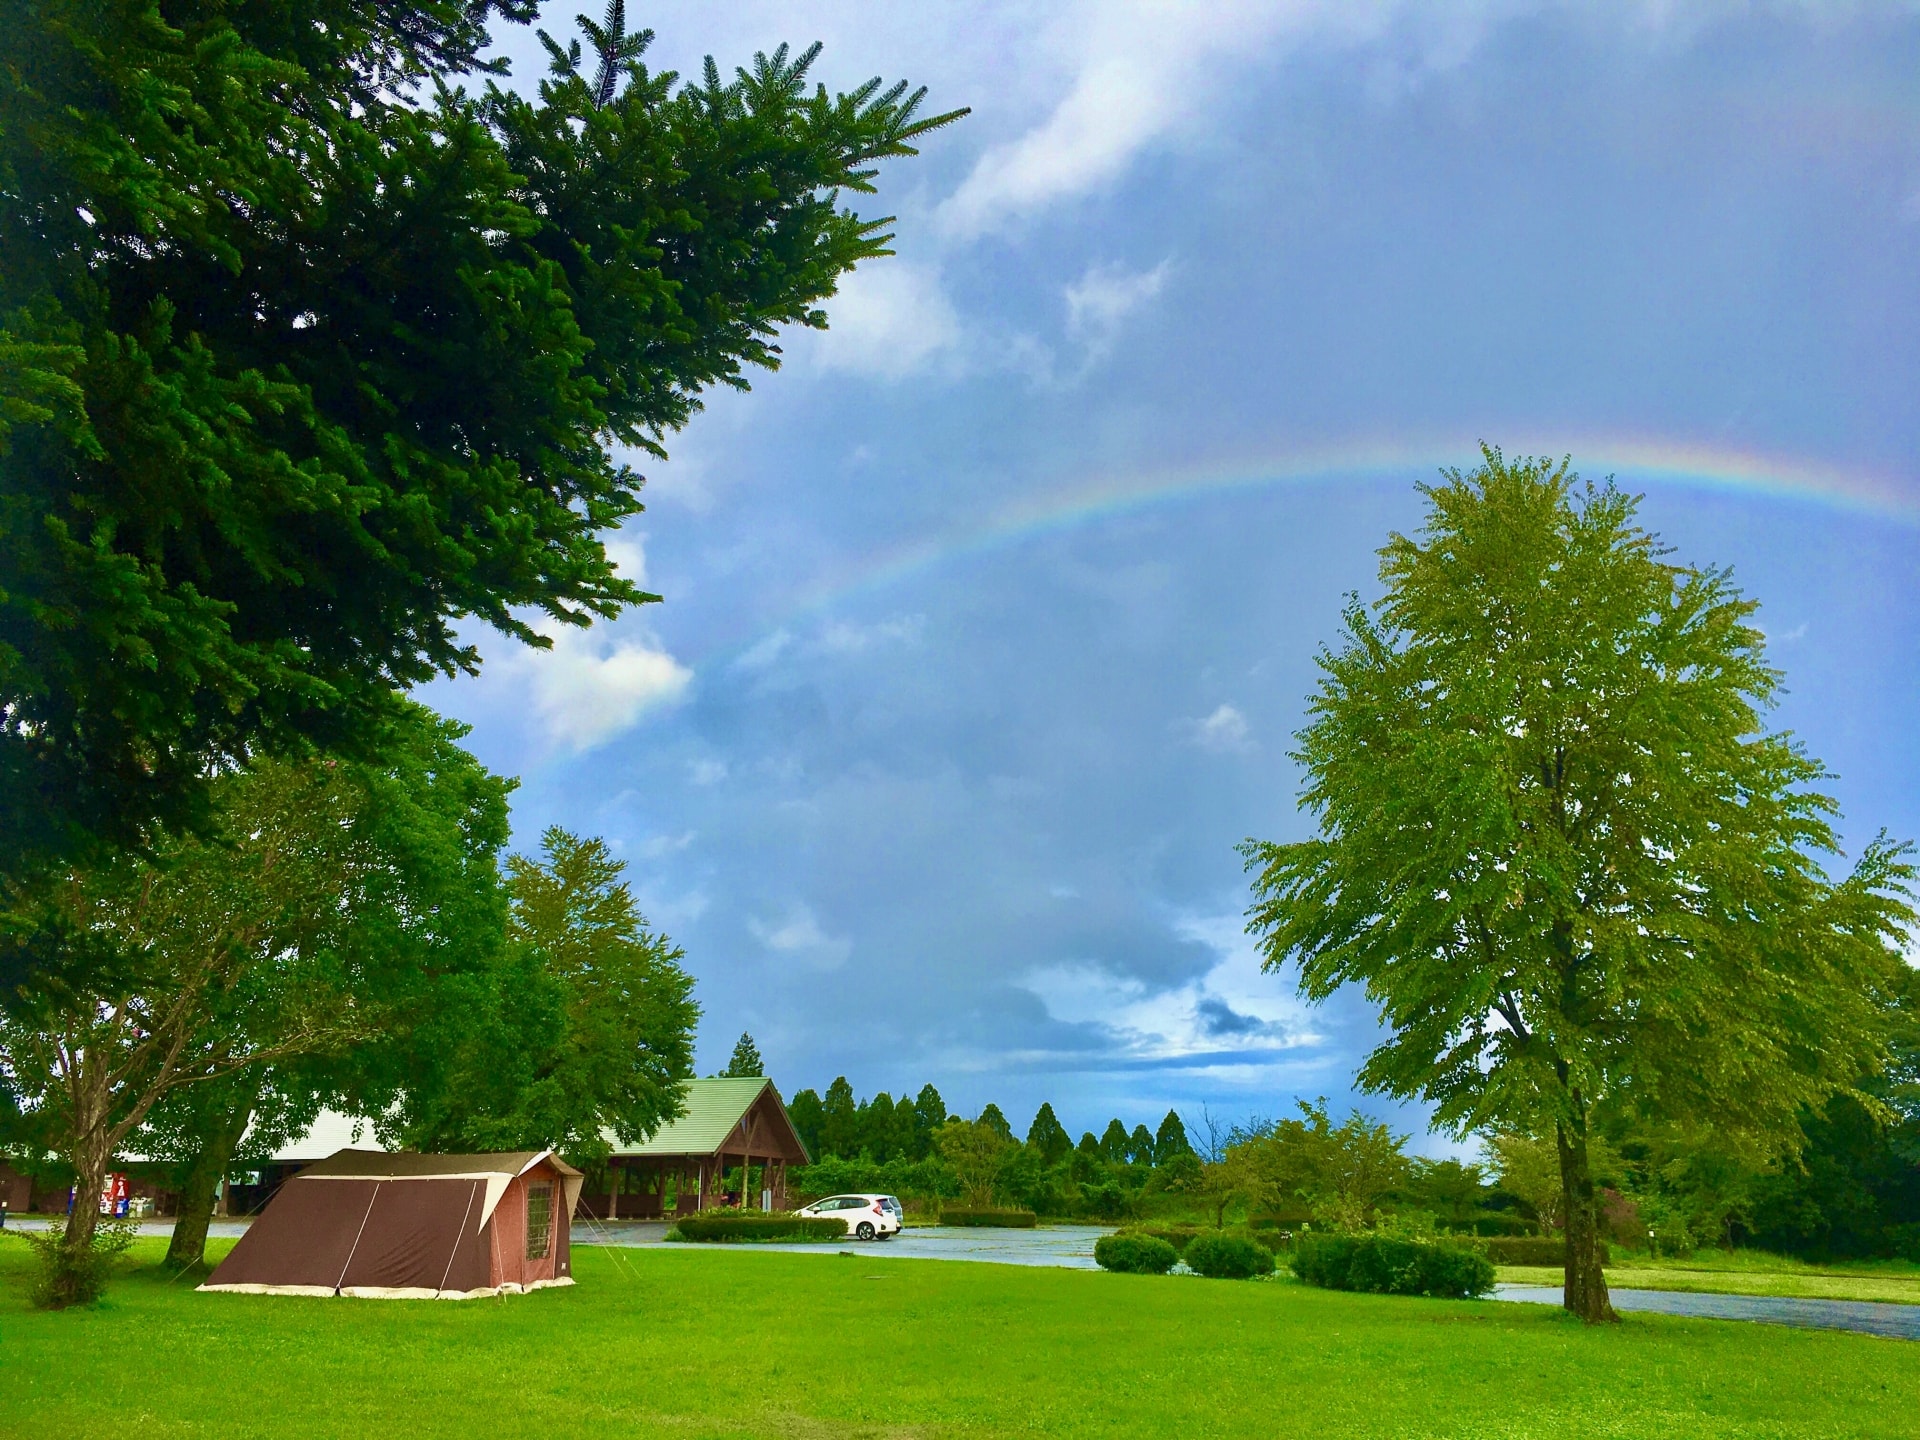 キャンプ場で虹が架かっている写真